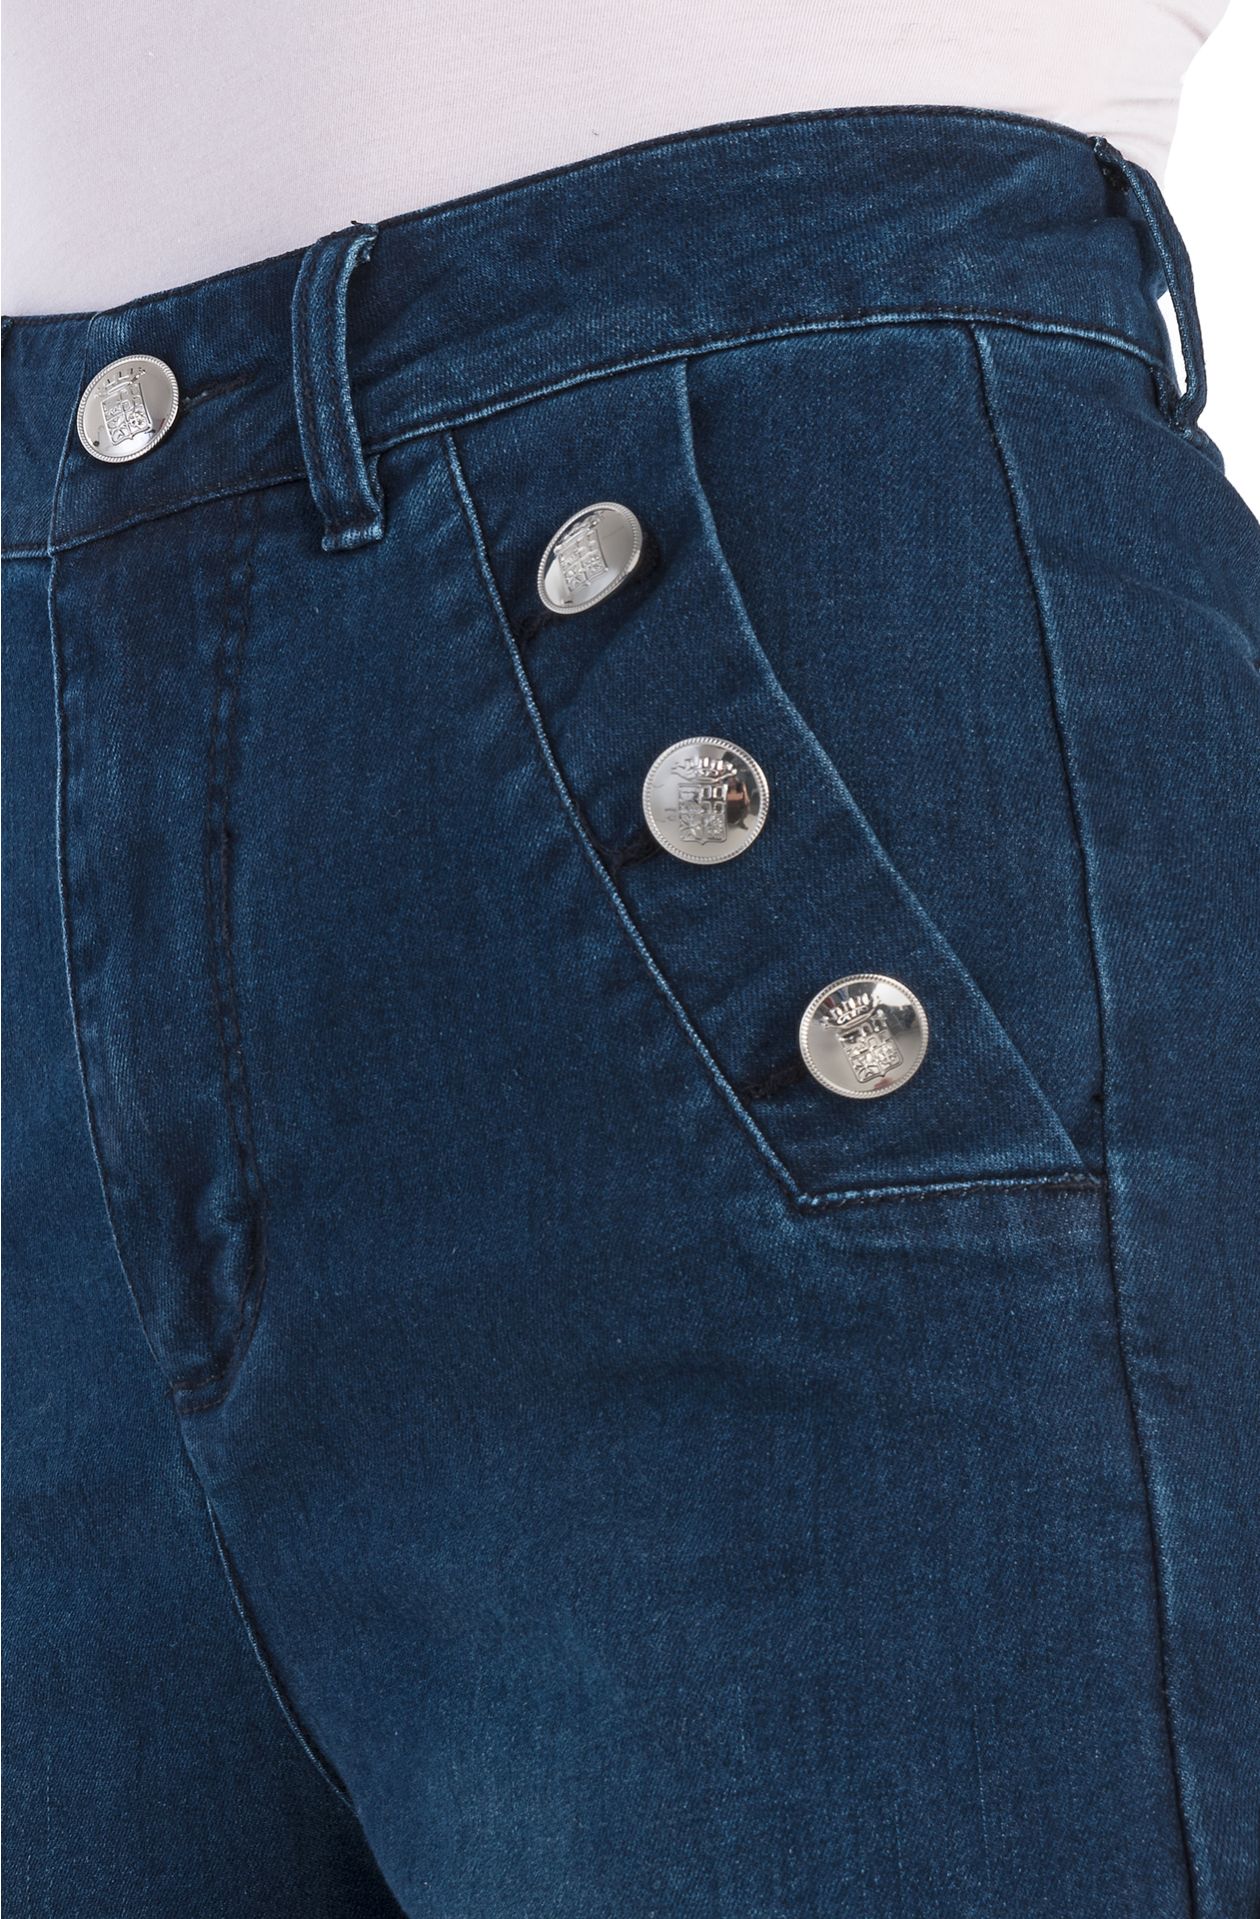 Jeans avec boutons en métal